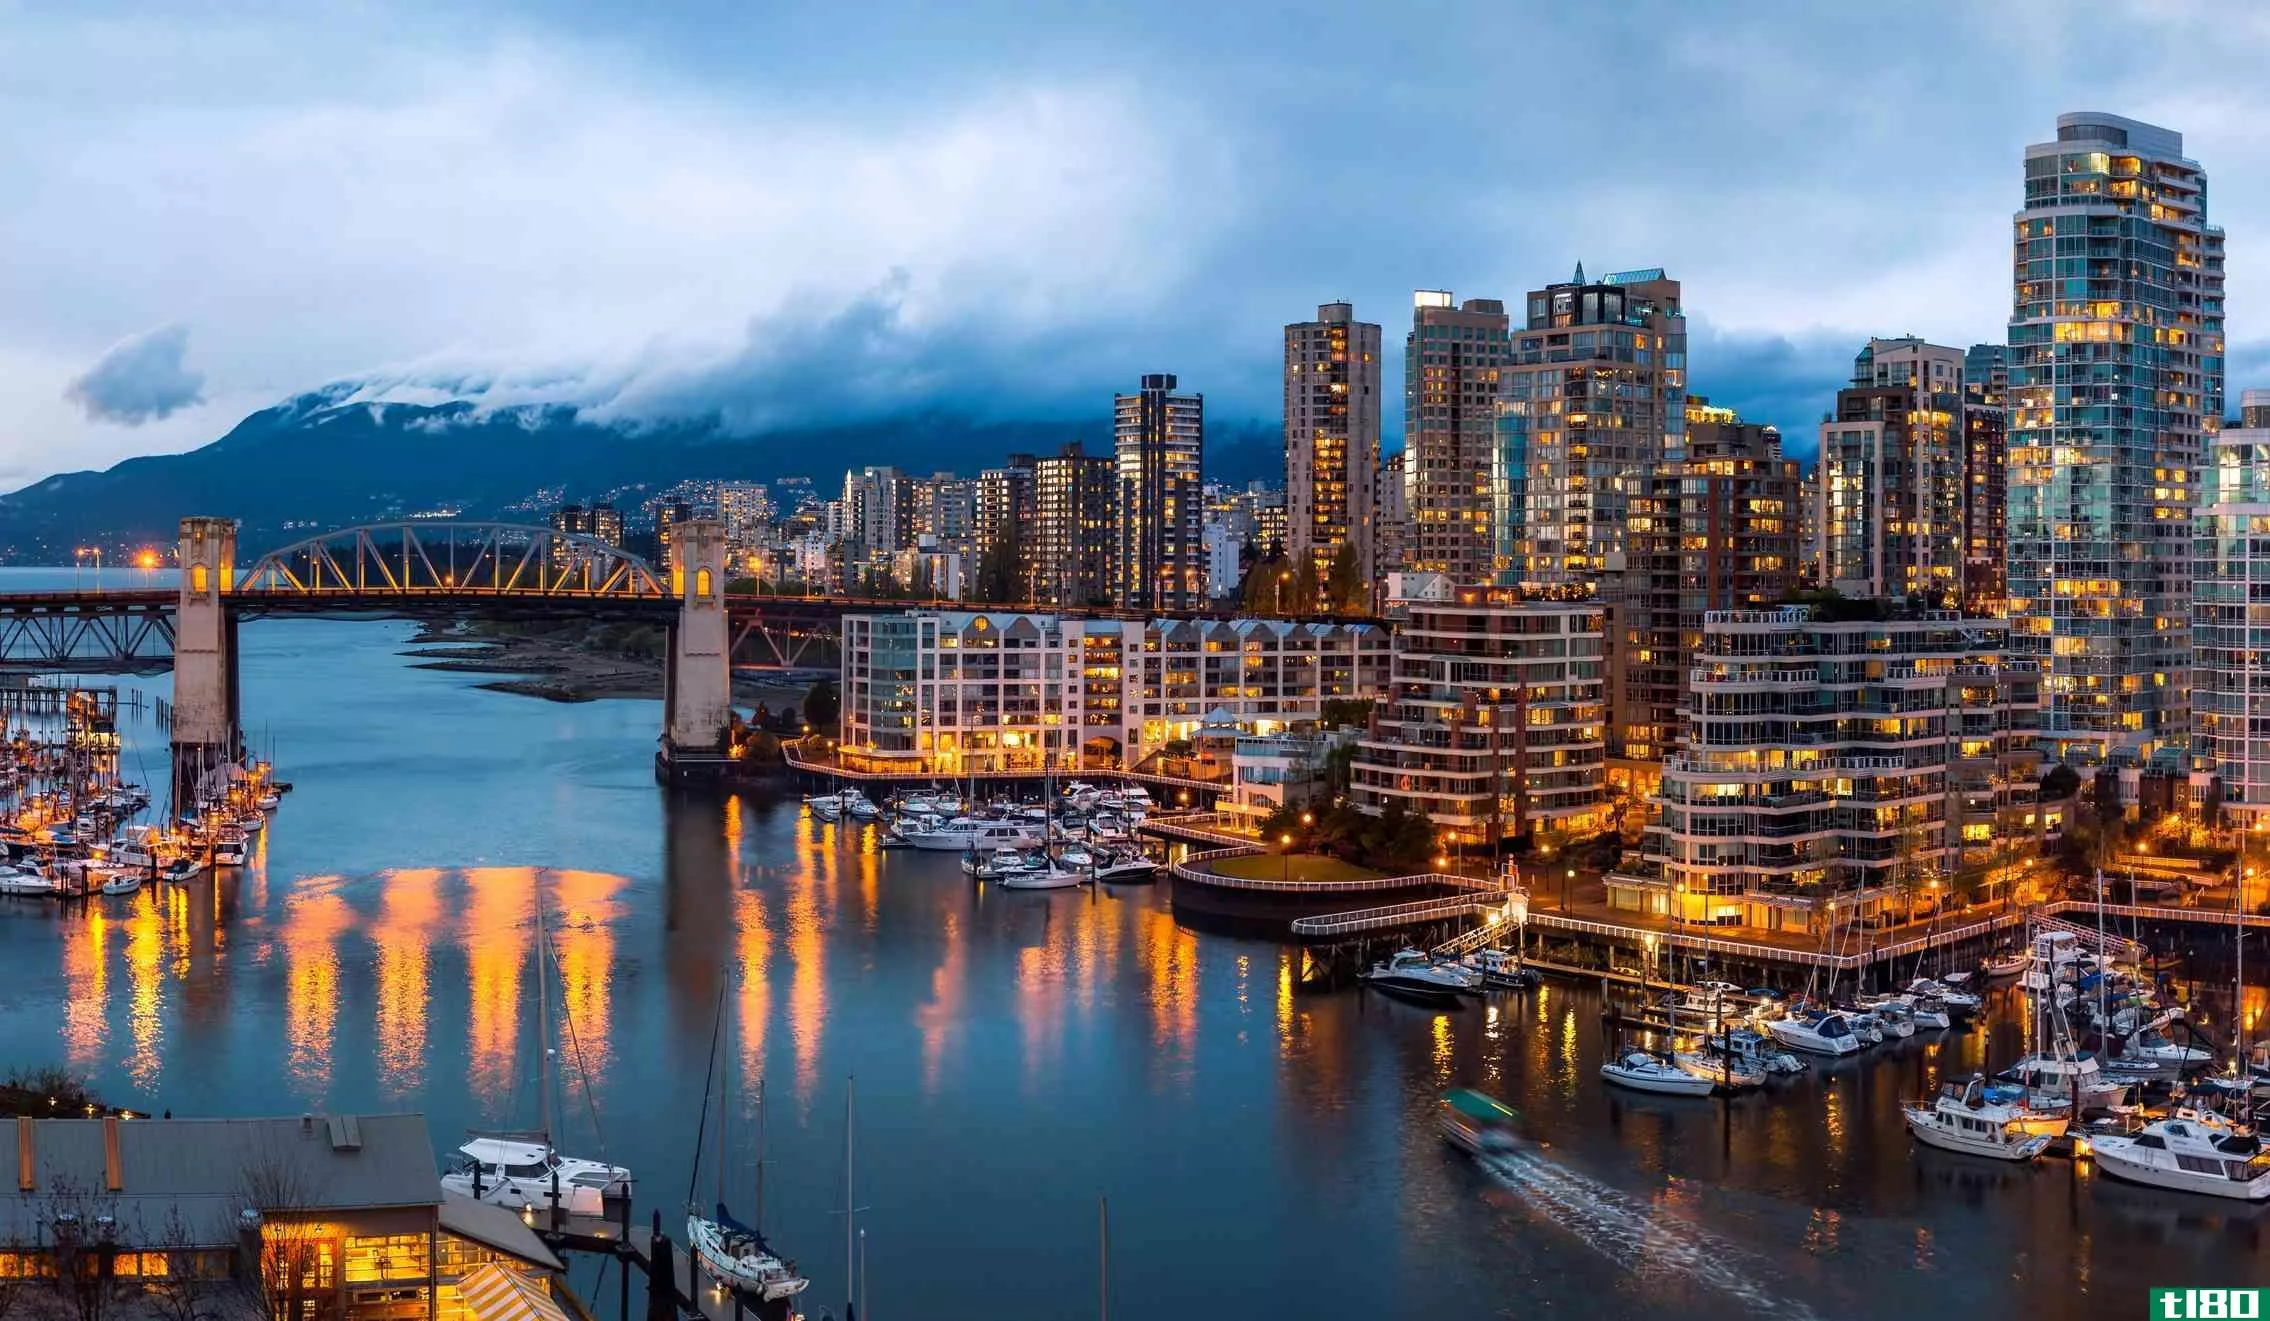 Burrard Bridge, Vancouver, British Columbia, Canada.